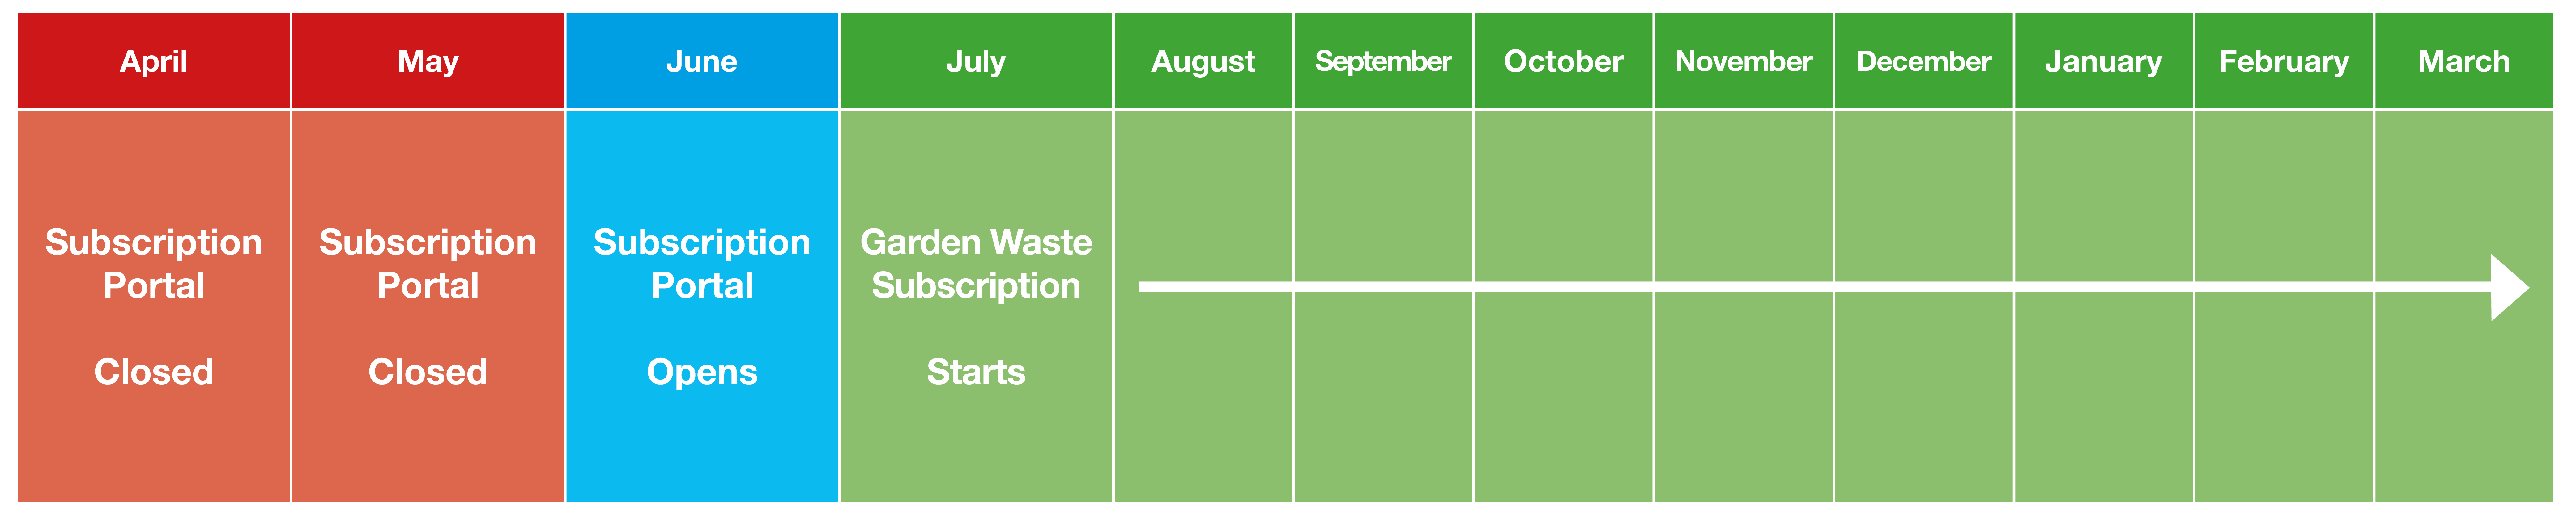 Garden Waste Subscription Service Calendar